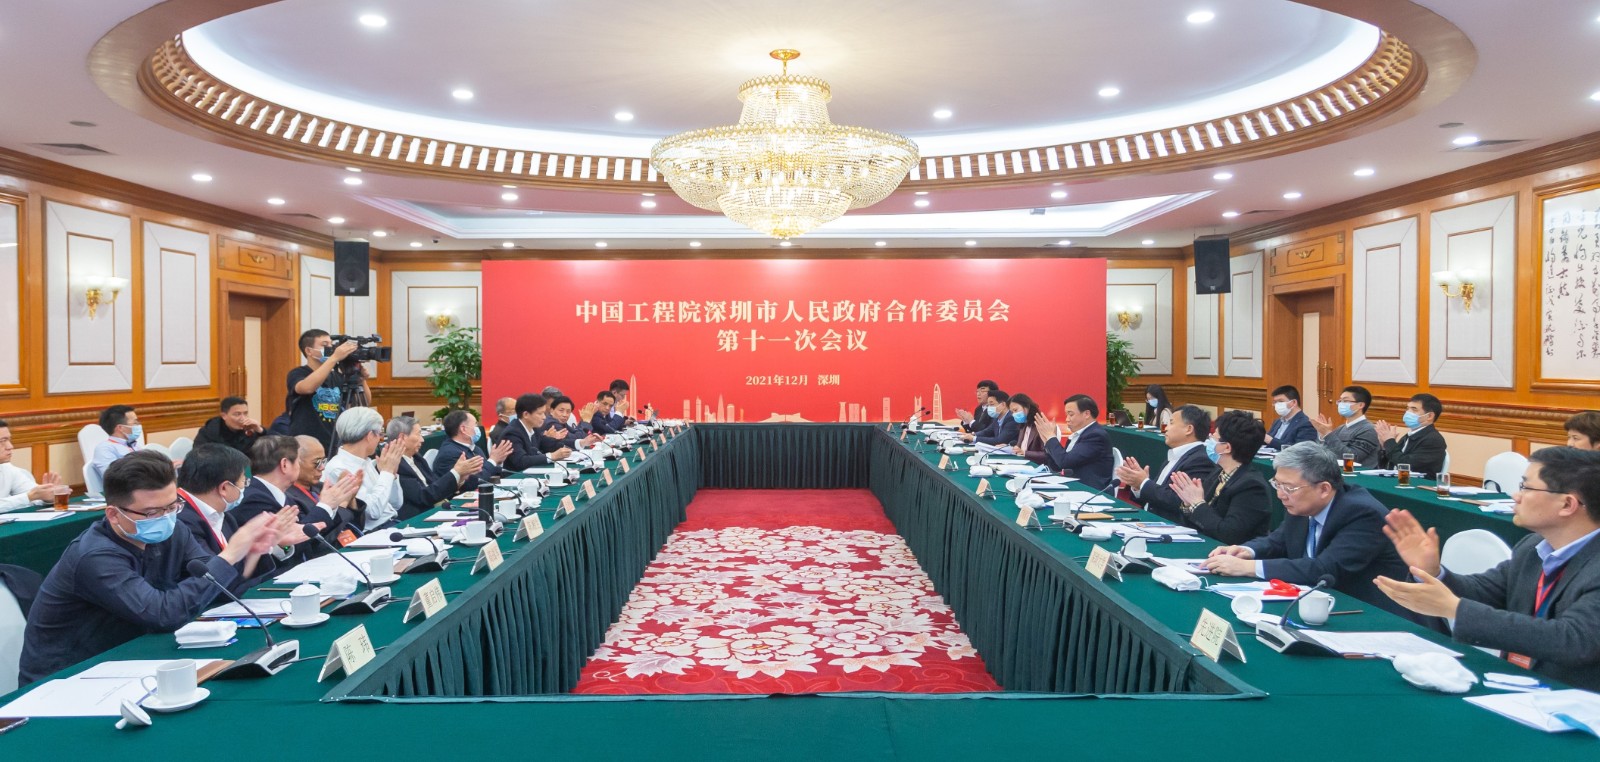 中国工程院深圳市人民政府合作委员会第十一次会议在深圳举行1.jpg